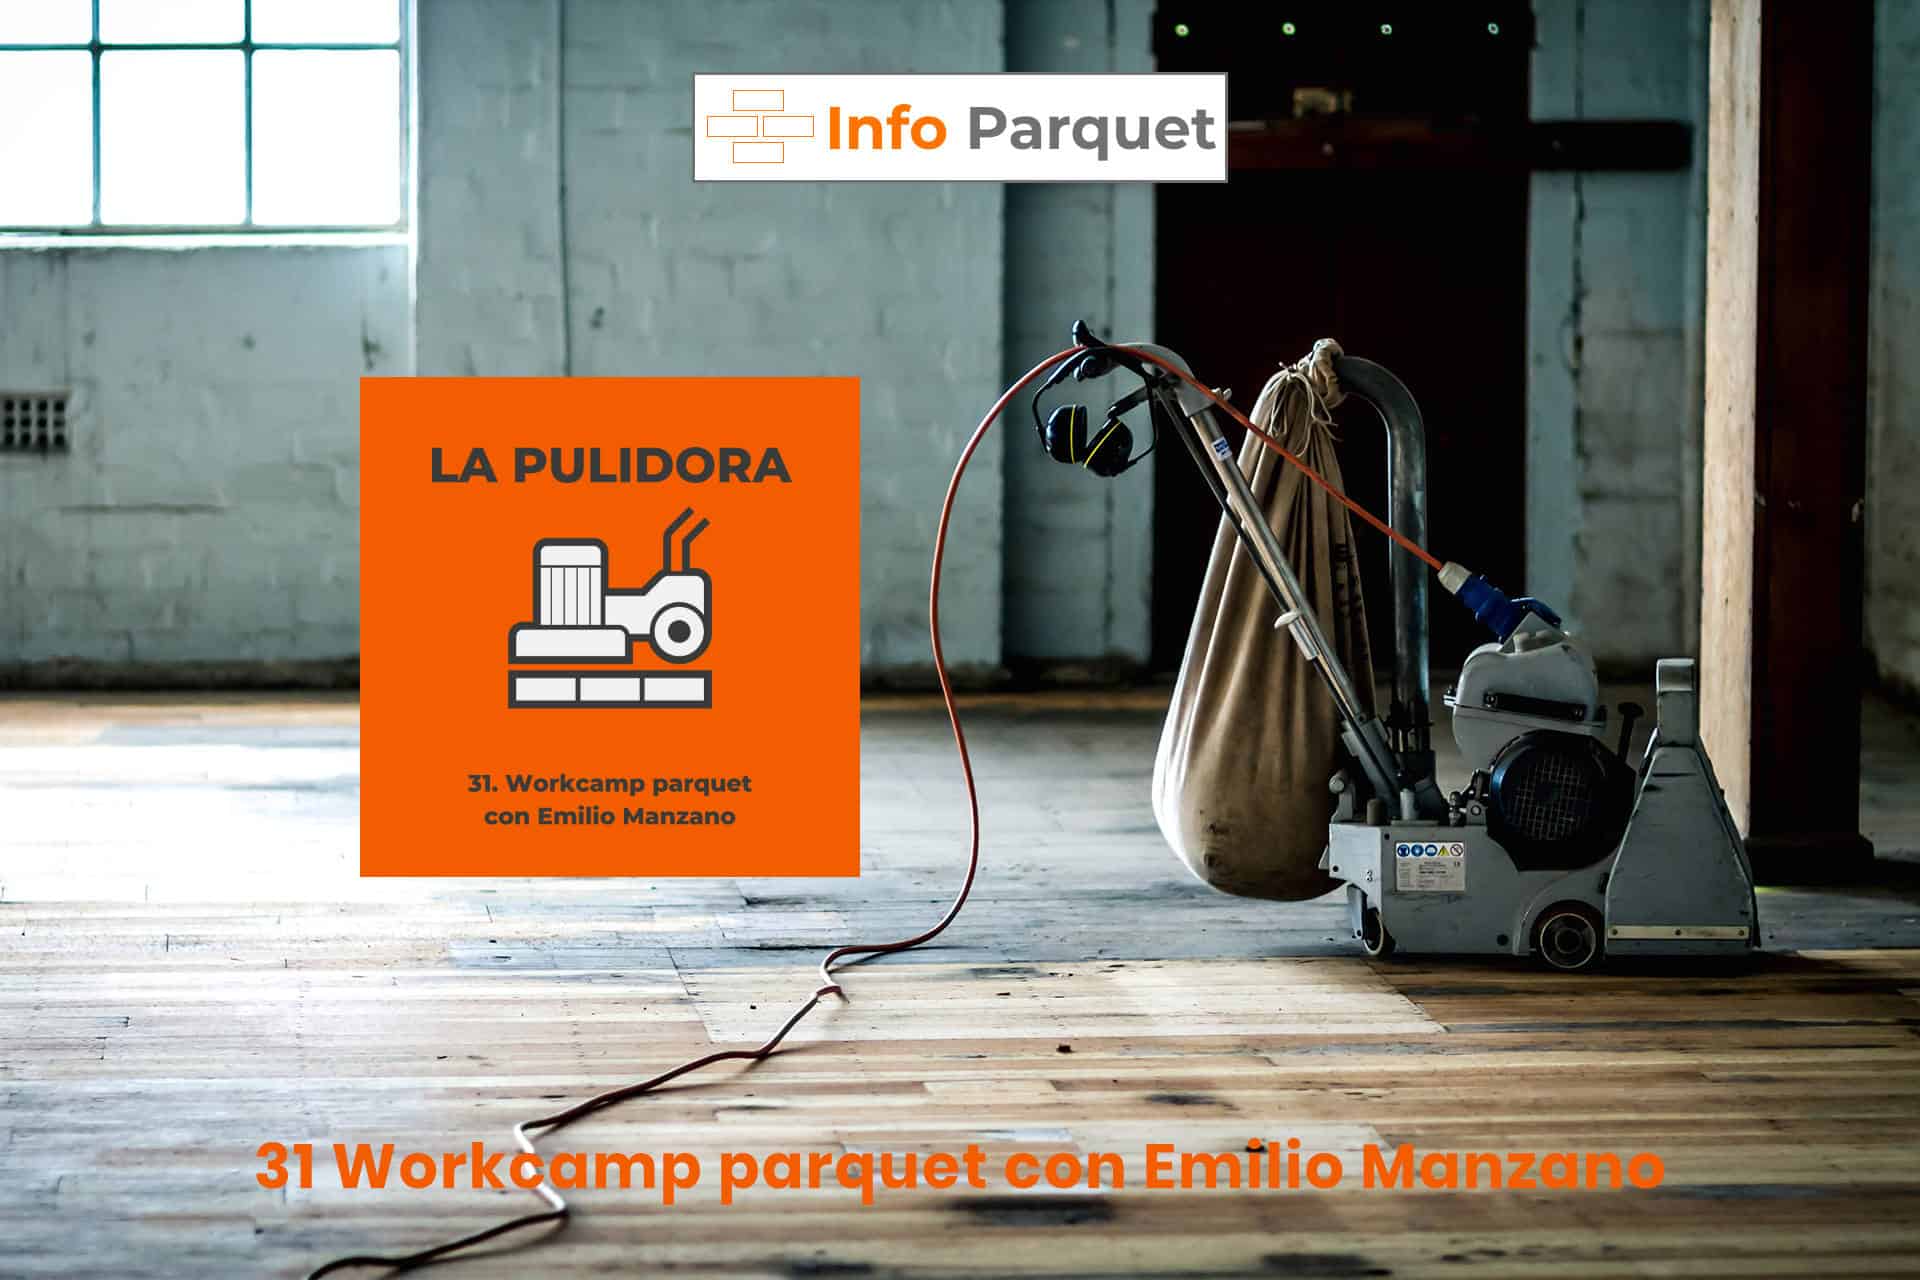 Workcamp parquet con Emilio Manzano